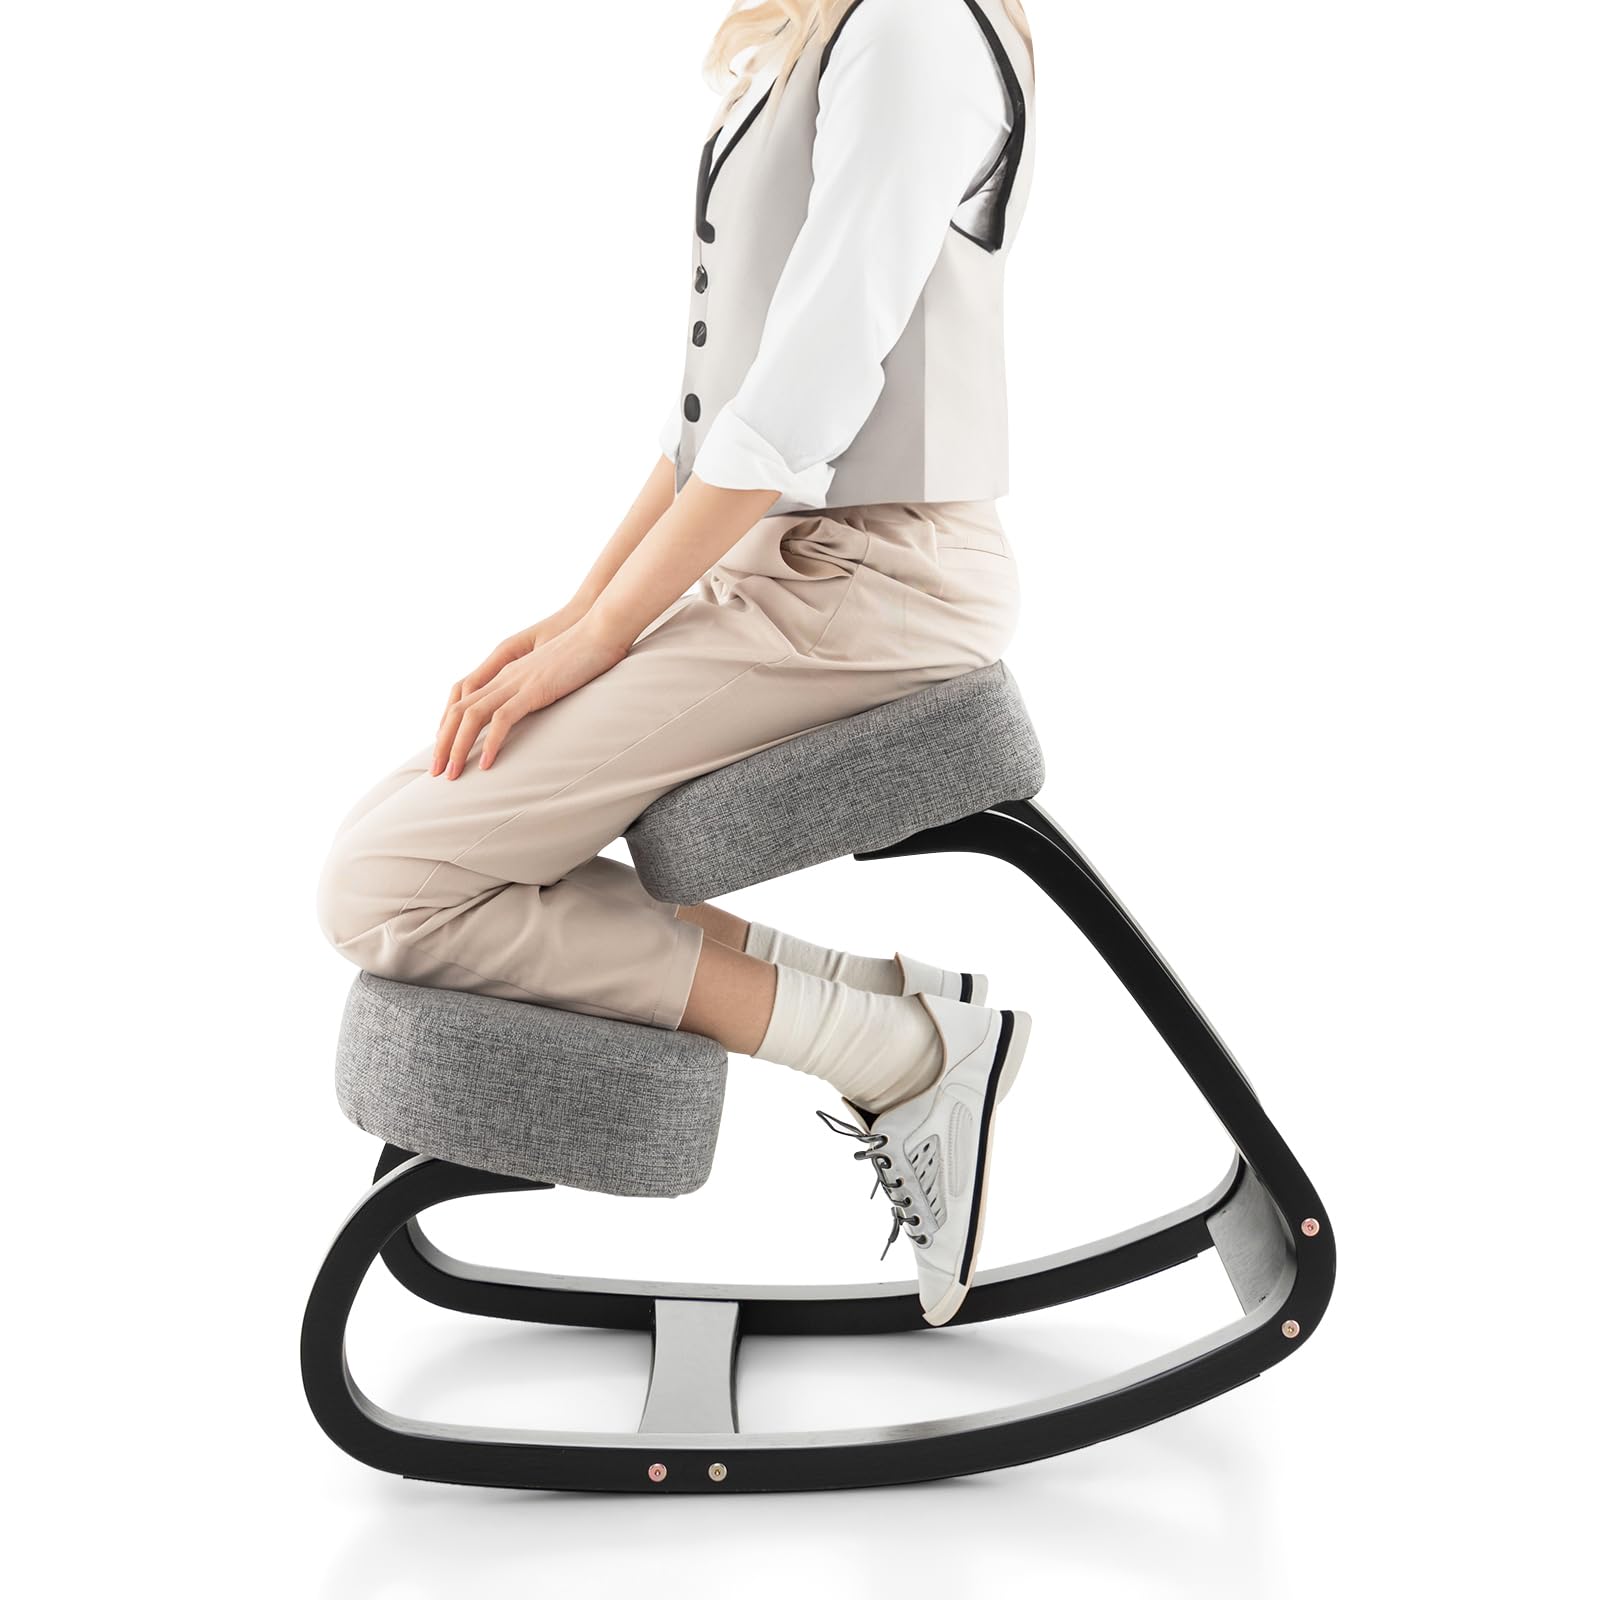 Giantex Kneeling Chair, Wood Posture Chair